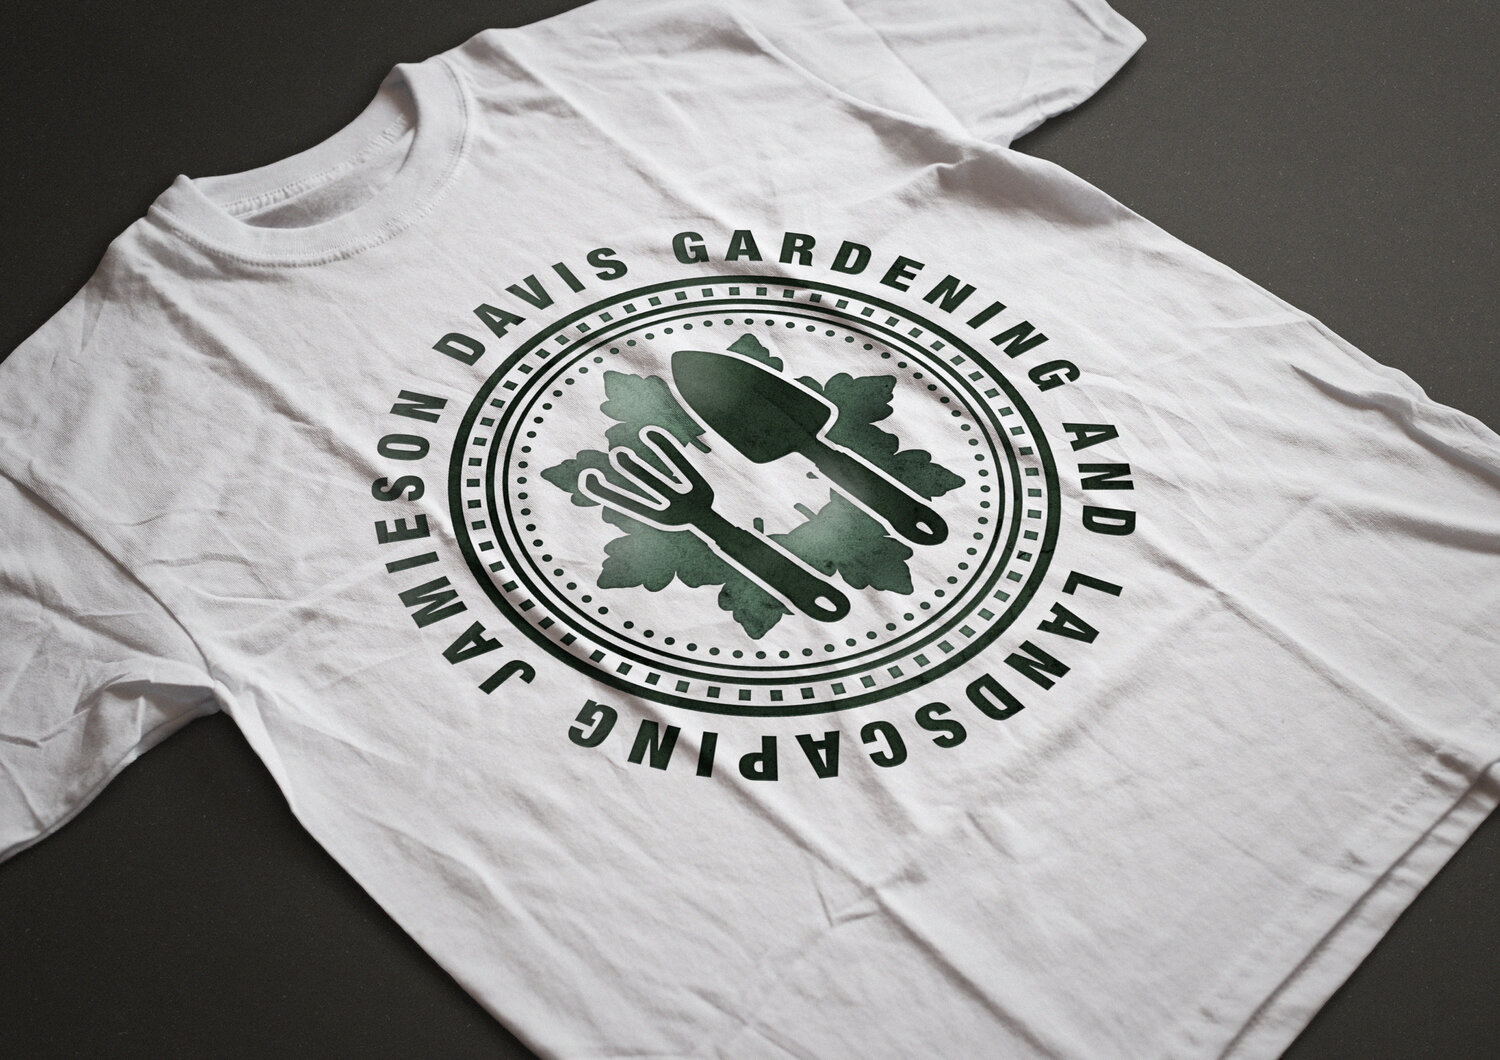 jay+Branding+t+shirts.jpg